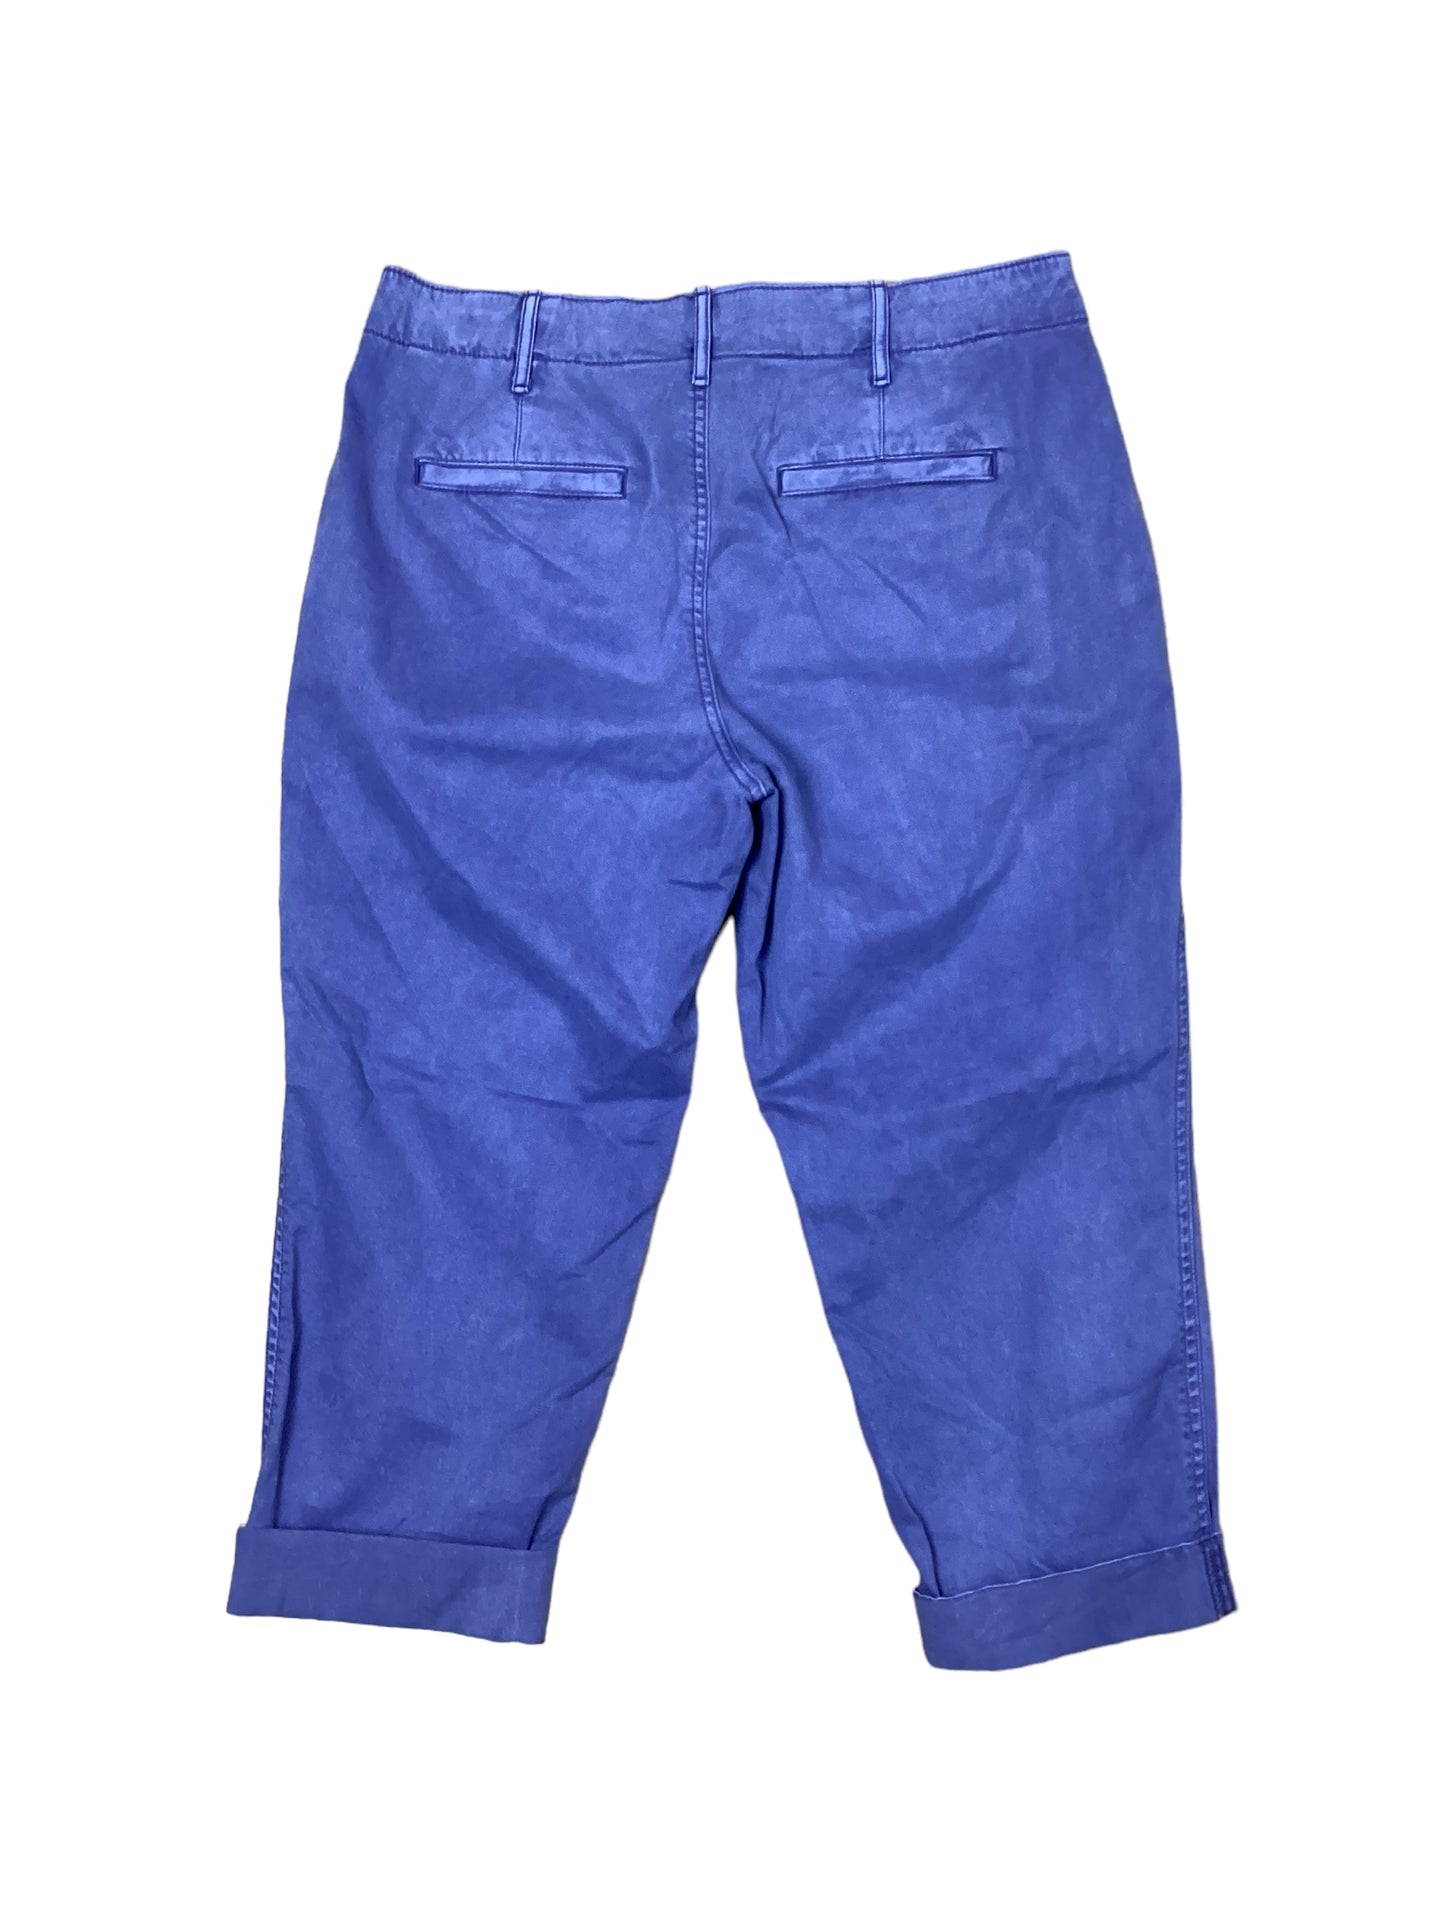 Pants Cropped By Gap  Size: 10petite